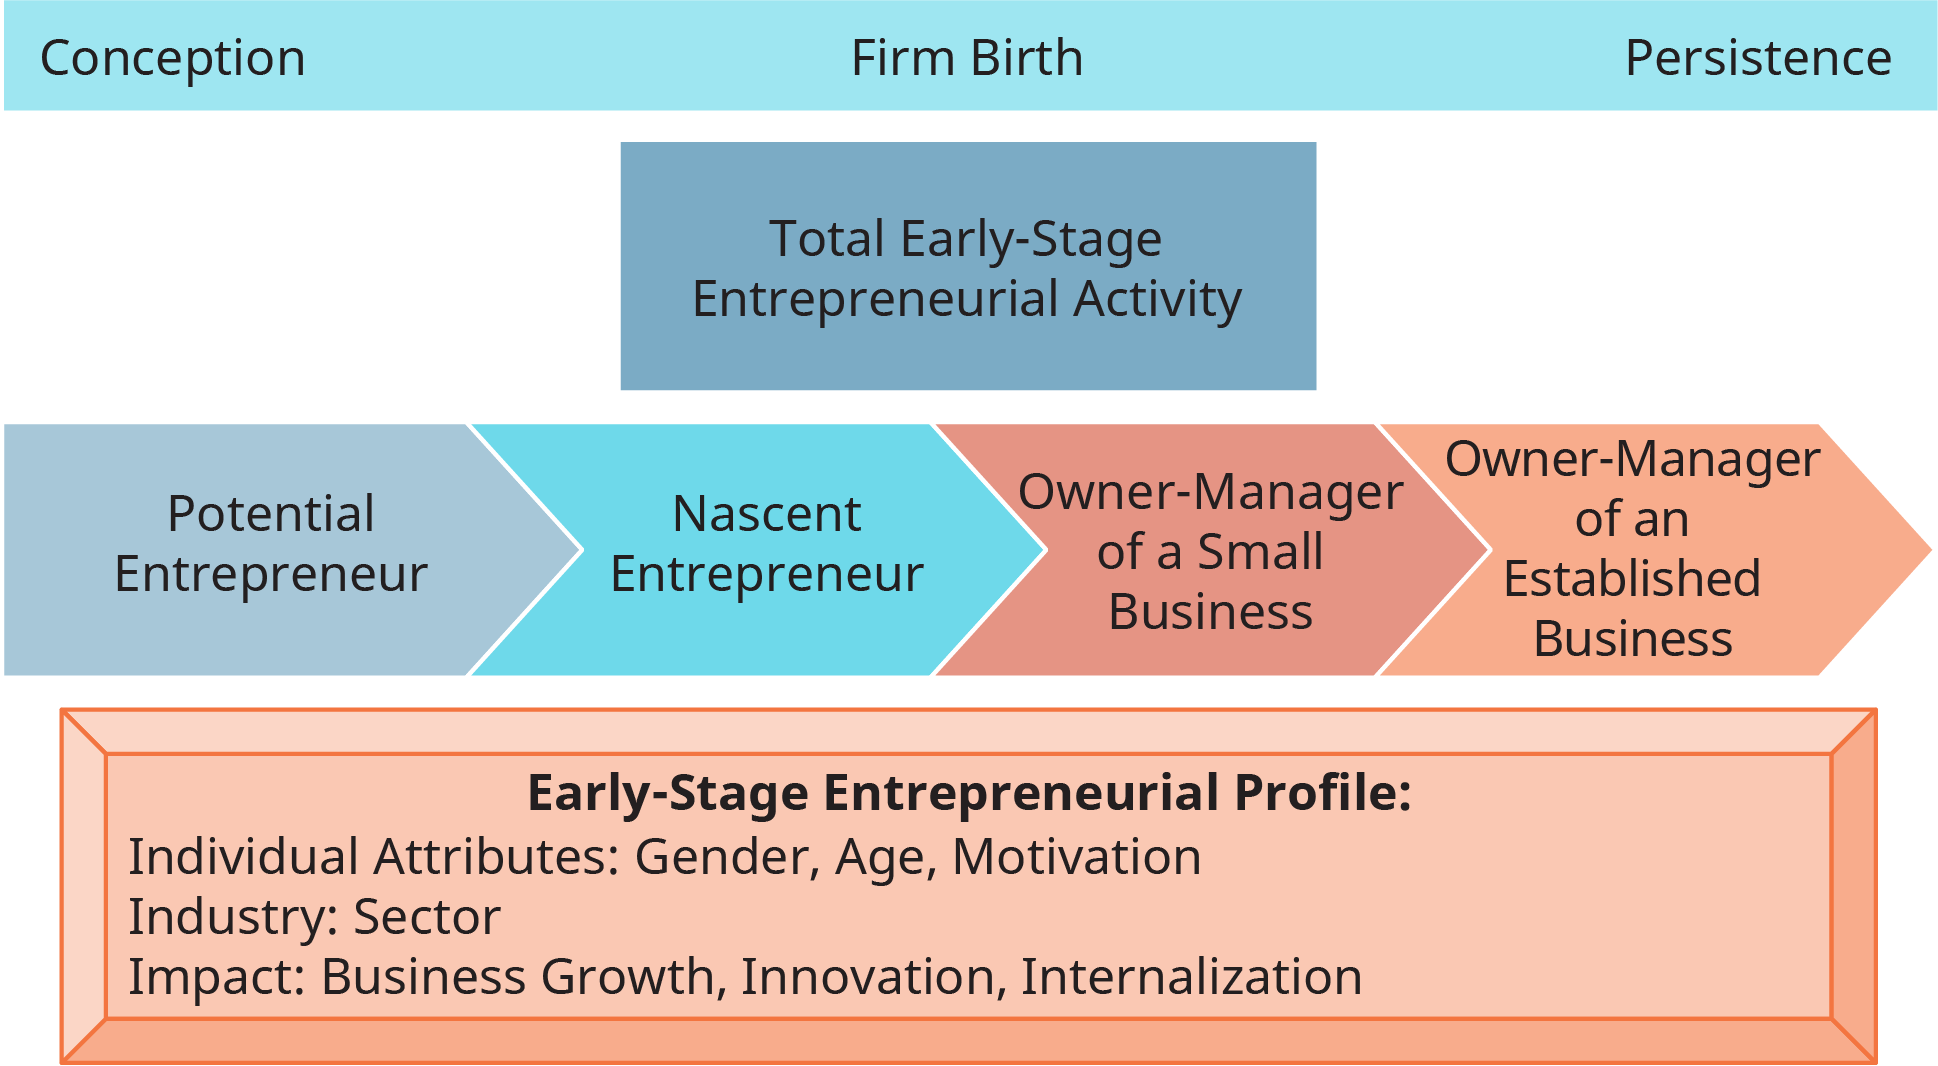 图表说明了创业活动的模型和衡量标准。